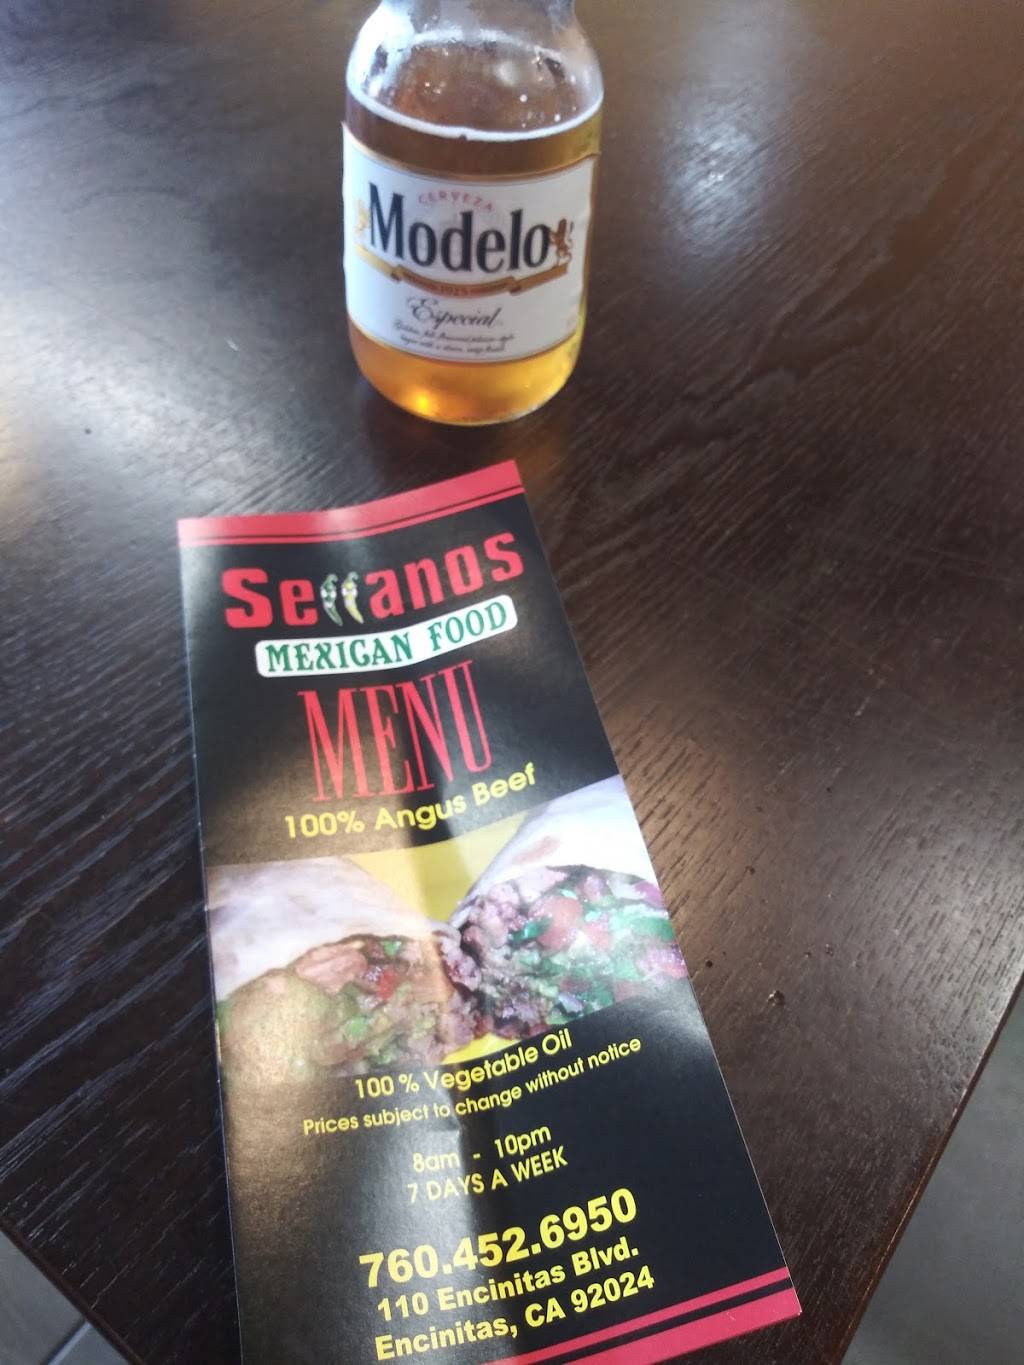 Serranos Mexican food | restaurant | 110 Encinitas Blvd, Encinitas, CA 92024, USA | 7604526950 OR +1 760-452-6950